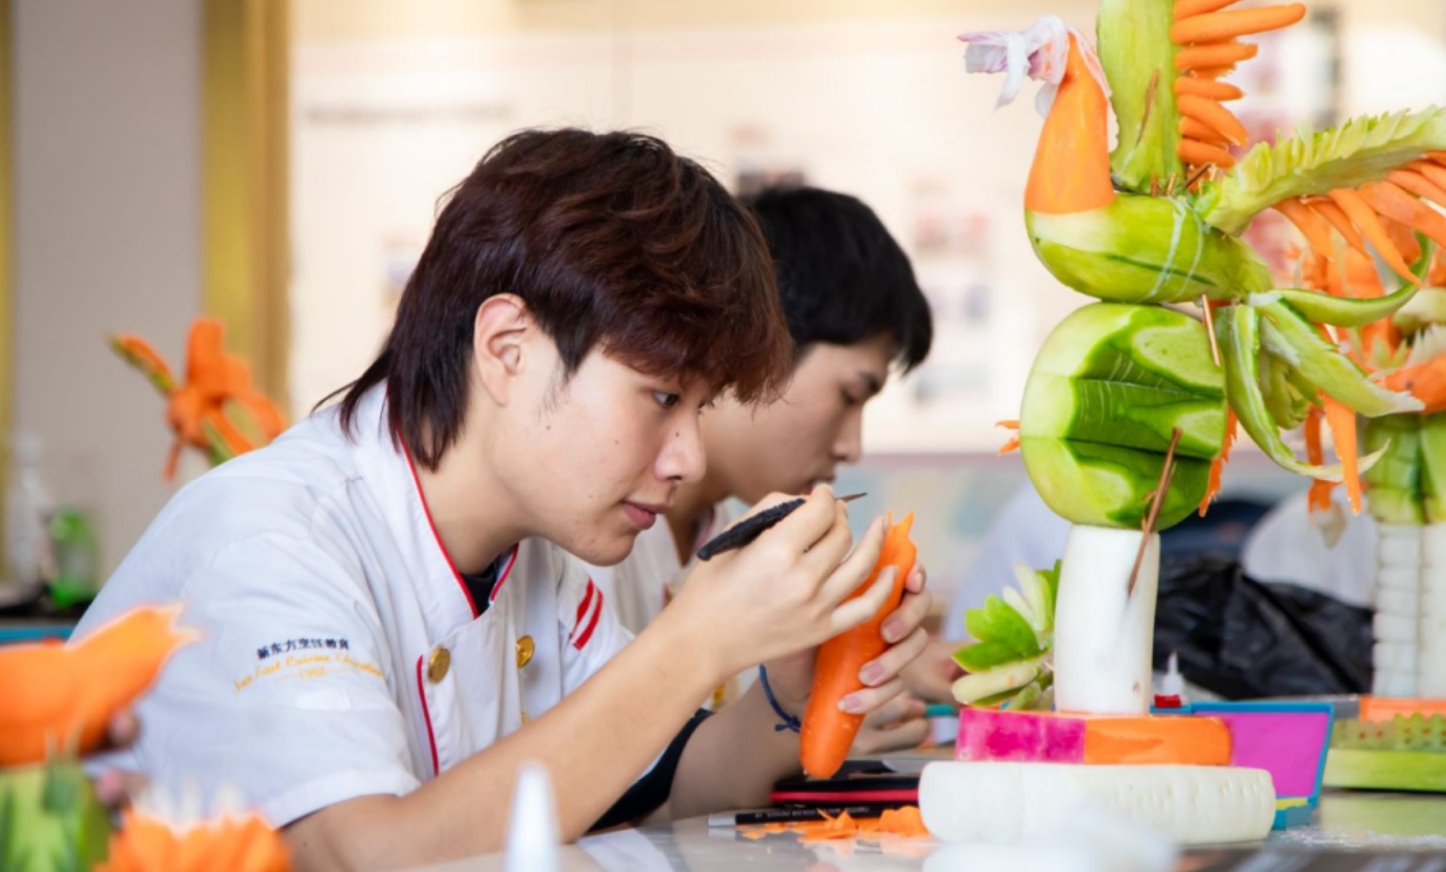 刀尖上的艺术丨大厨精英2204班同学进行食品雕刻阶段考核